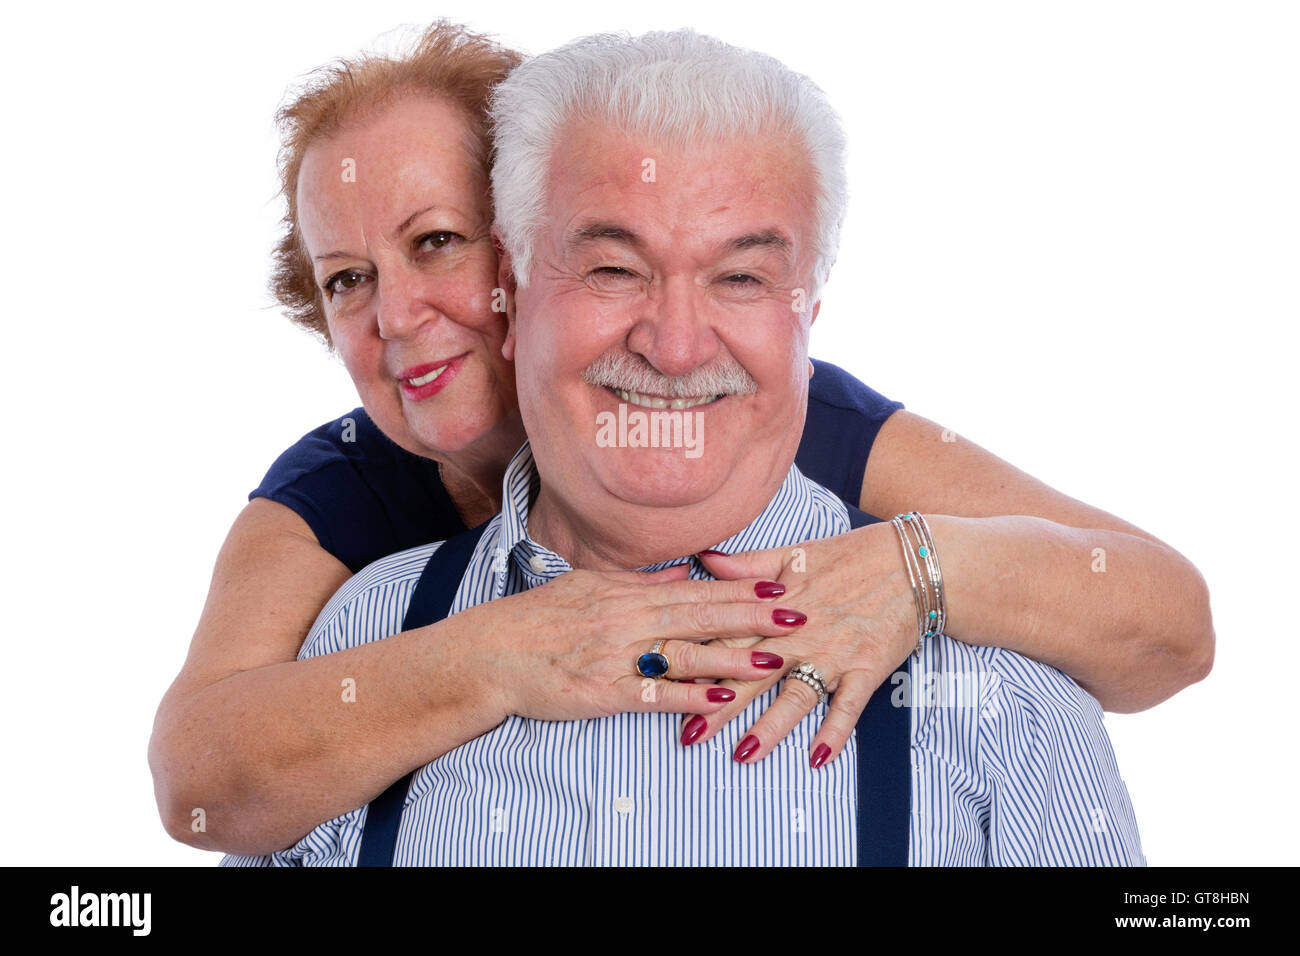 Sorridente marito in gessato camicia con giarrettiere essendo abbracciato dalla moglie felice da dietro su sfondo bianco Foto Stock